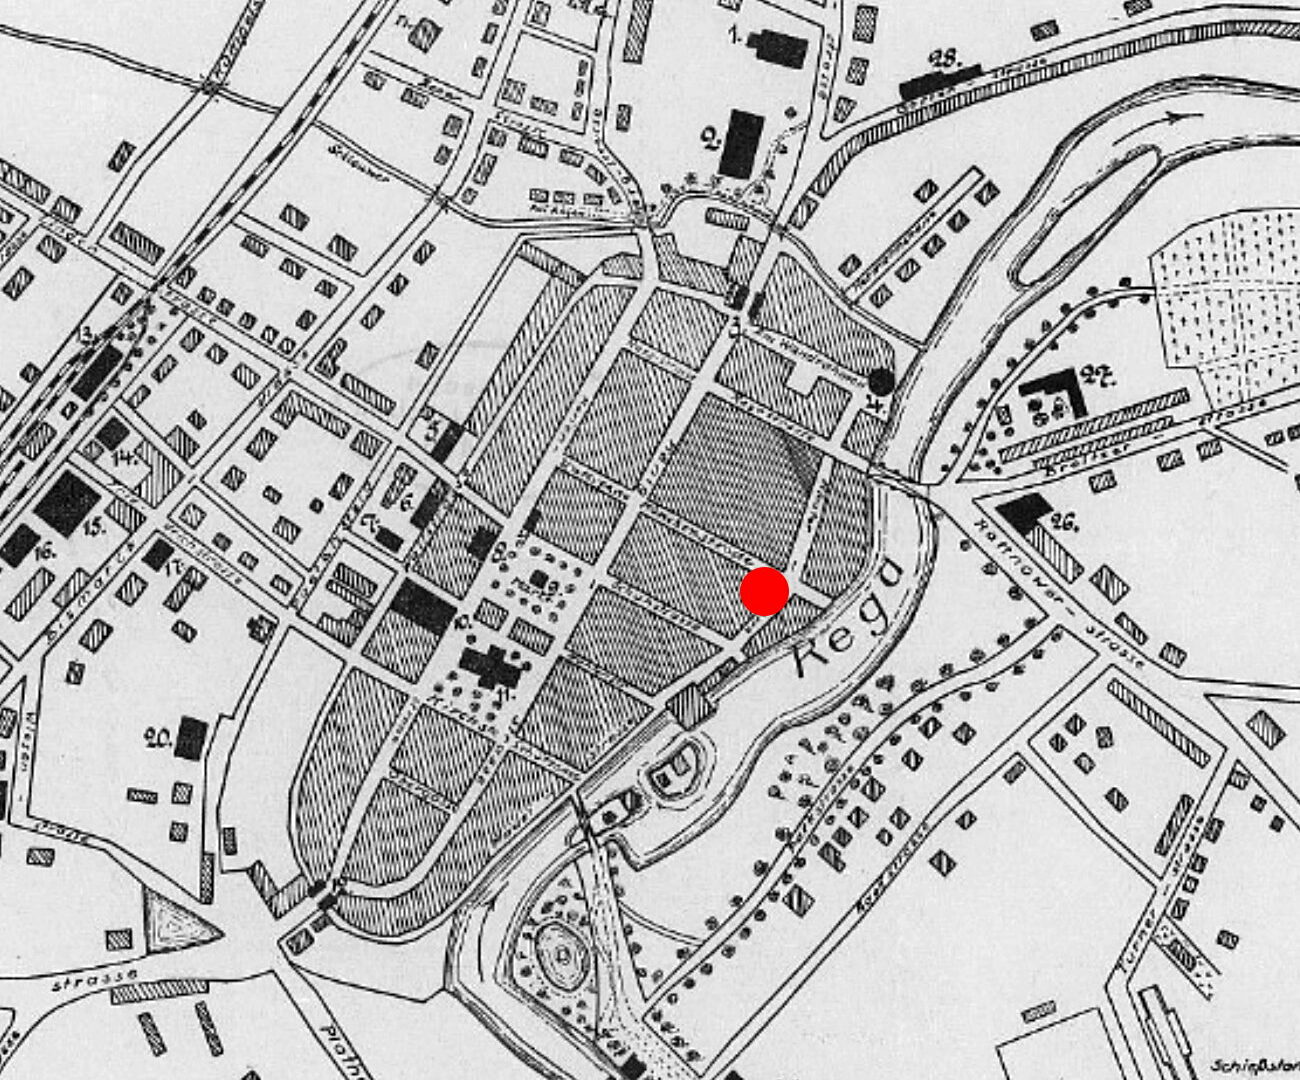 Plan der Stadt Greifenberg vor dem Zweiten Weltkrieg mit Lage des Klosters in der Altstadt (roter Punkt) / www.omnia.ie; Bearbeitung A. Kieseler